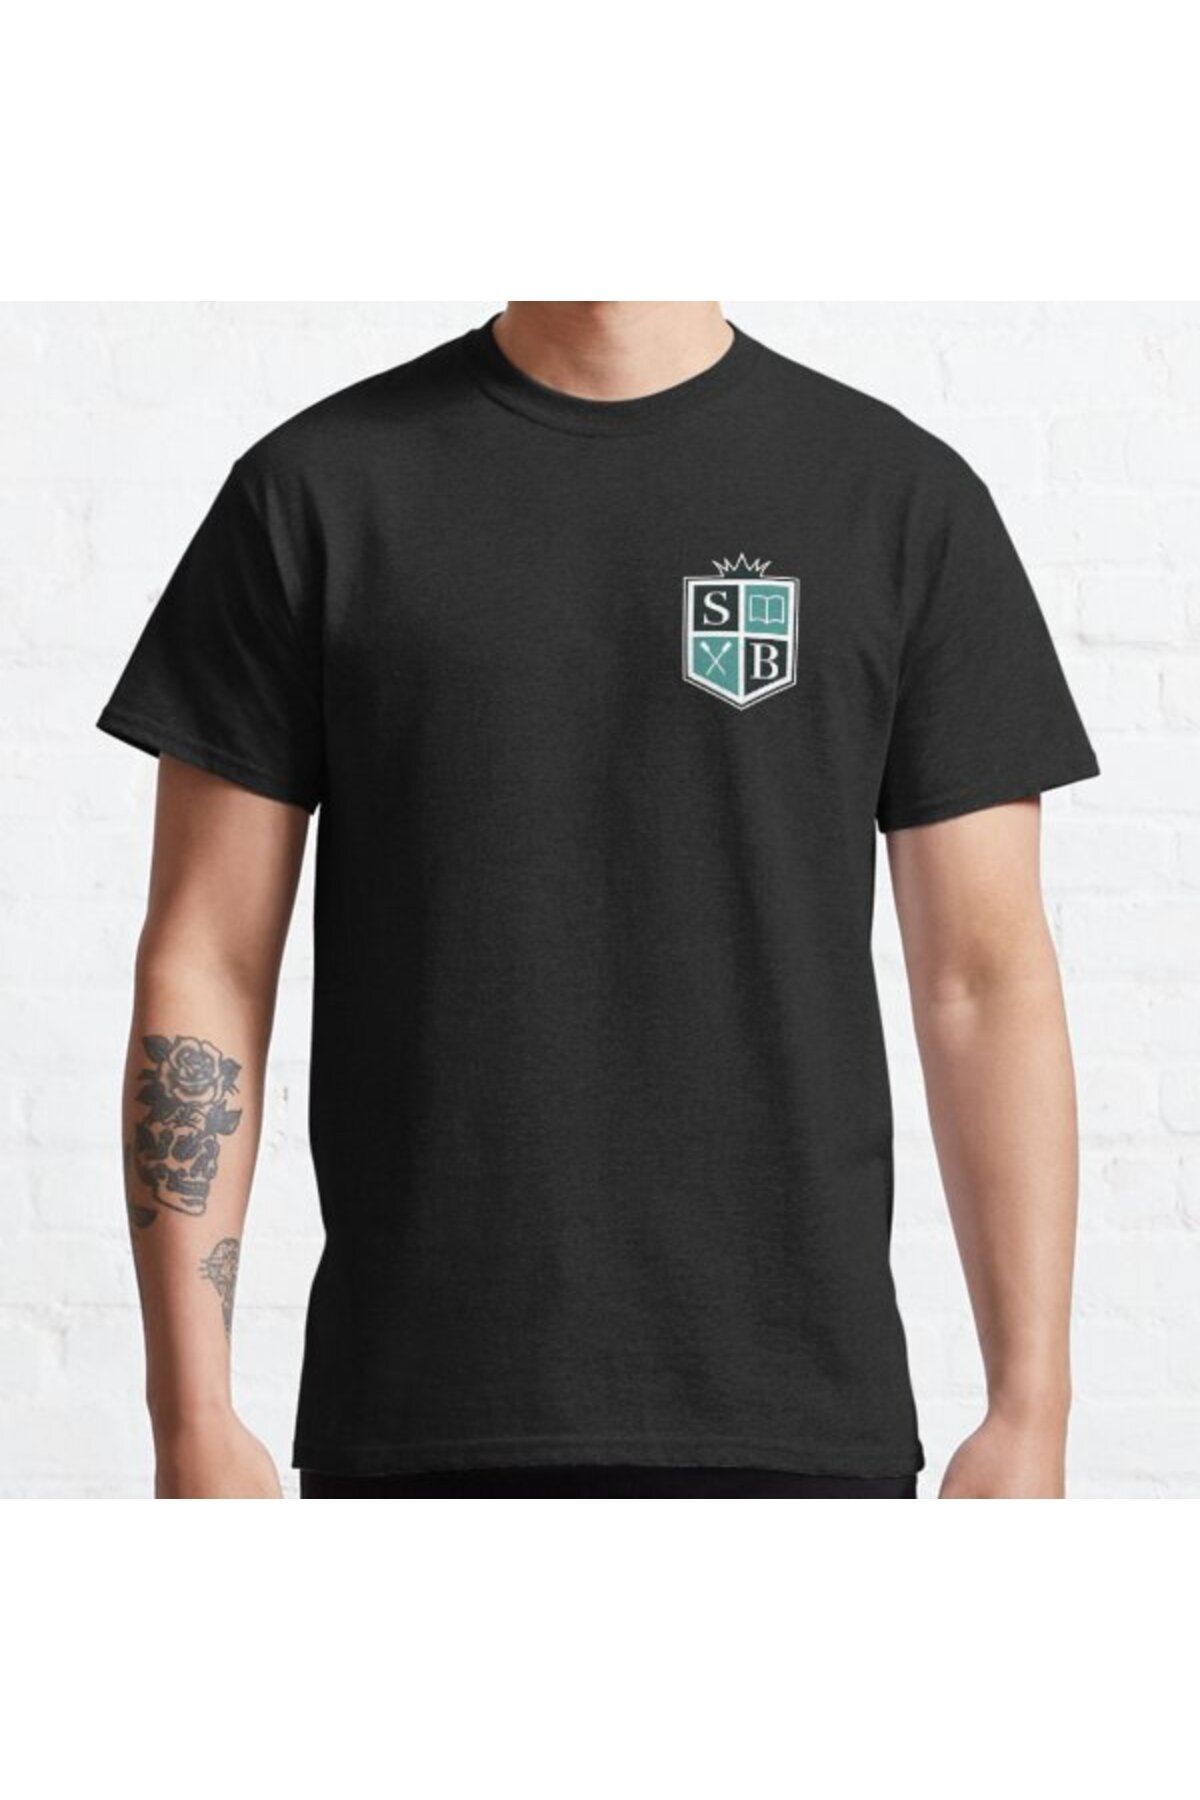 ZOKAWEAR Oversize Unisex Hillerska skolan young royals school athletic logo Tasarım Baskılı Tshirt